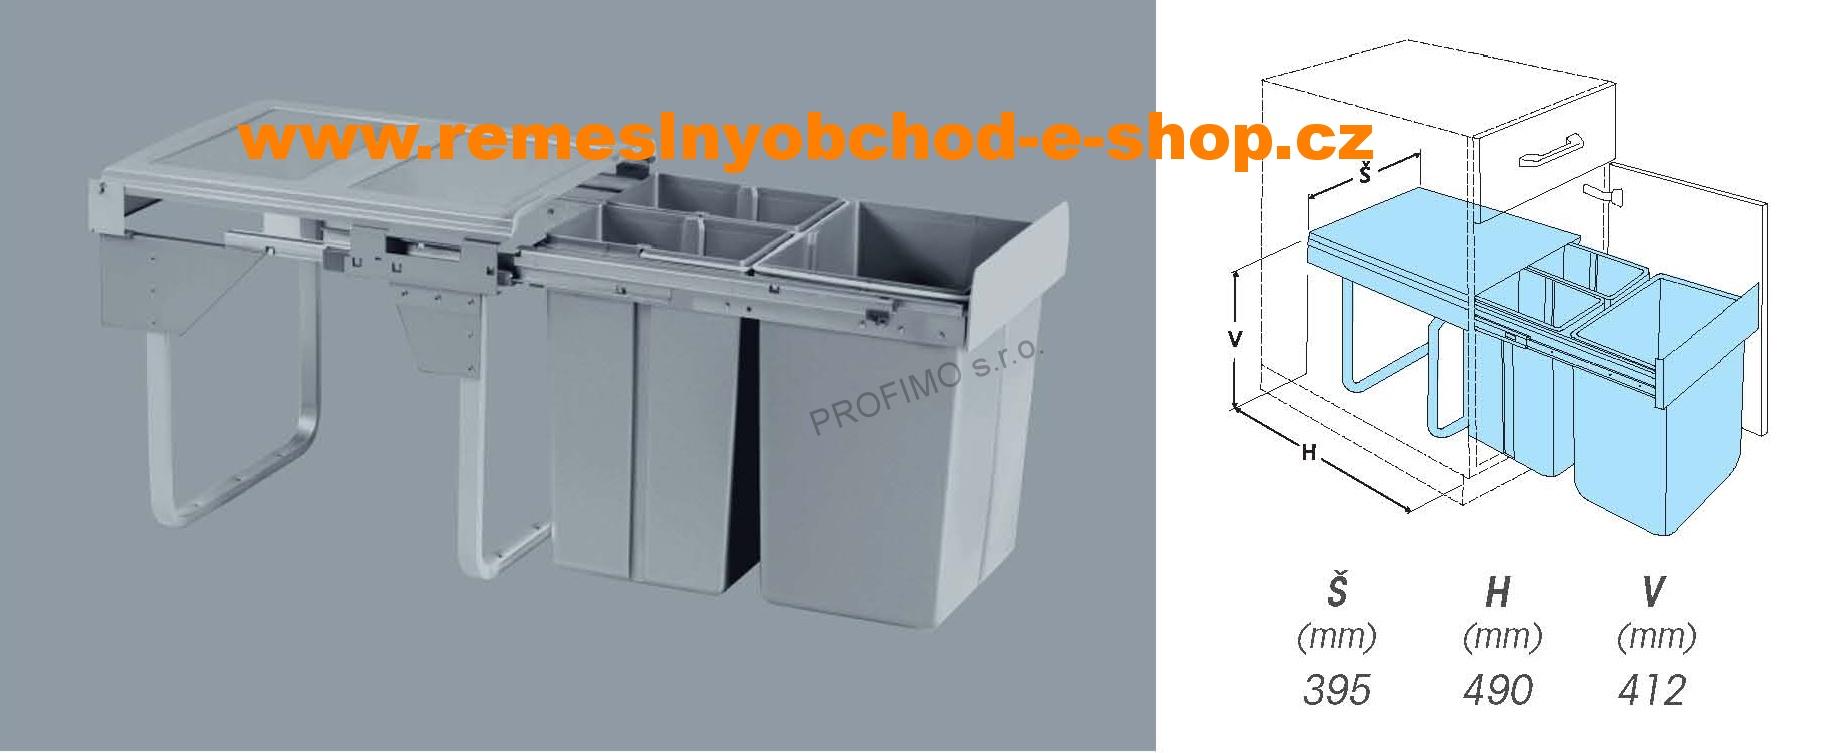 Výsuvný odpadkový 3koš Komfort, 1×20 l + 2×10 l, K45, šedý plast